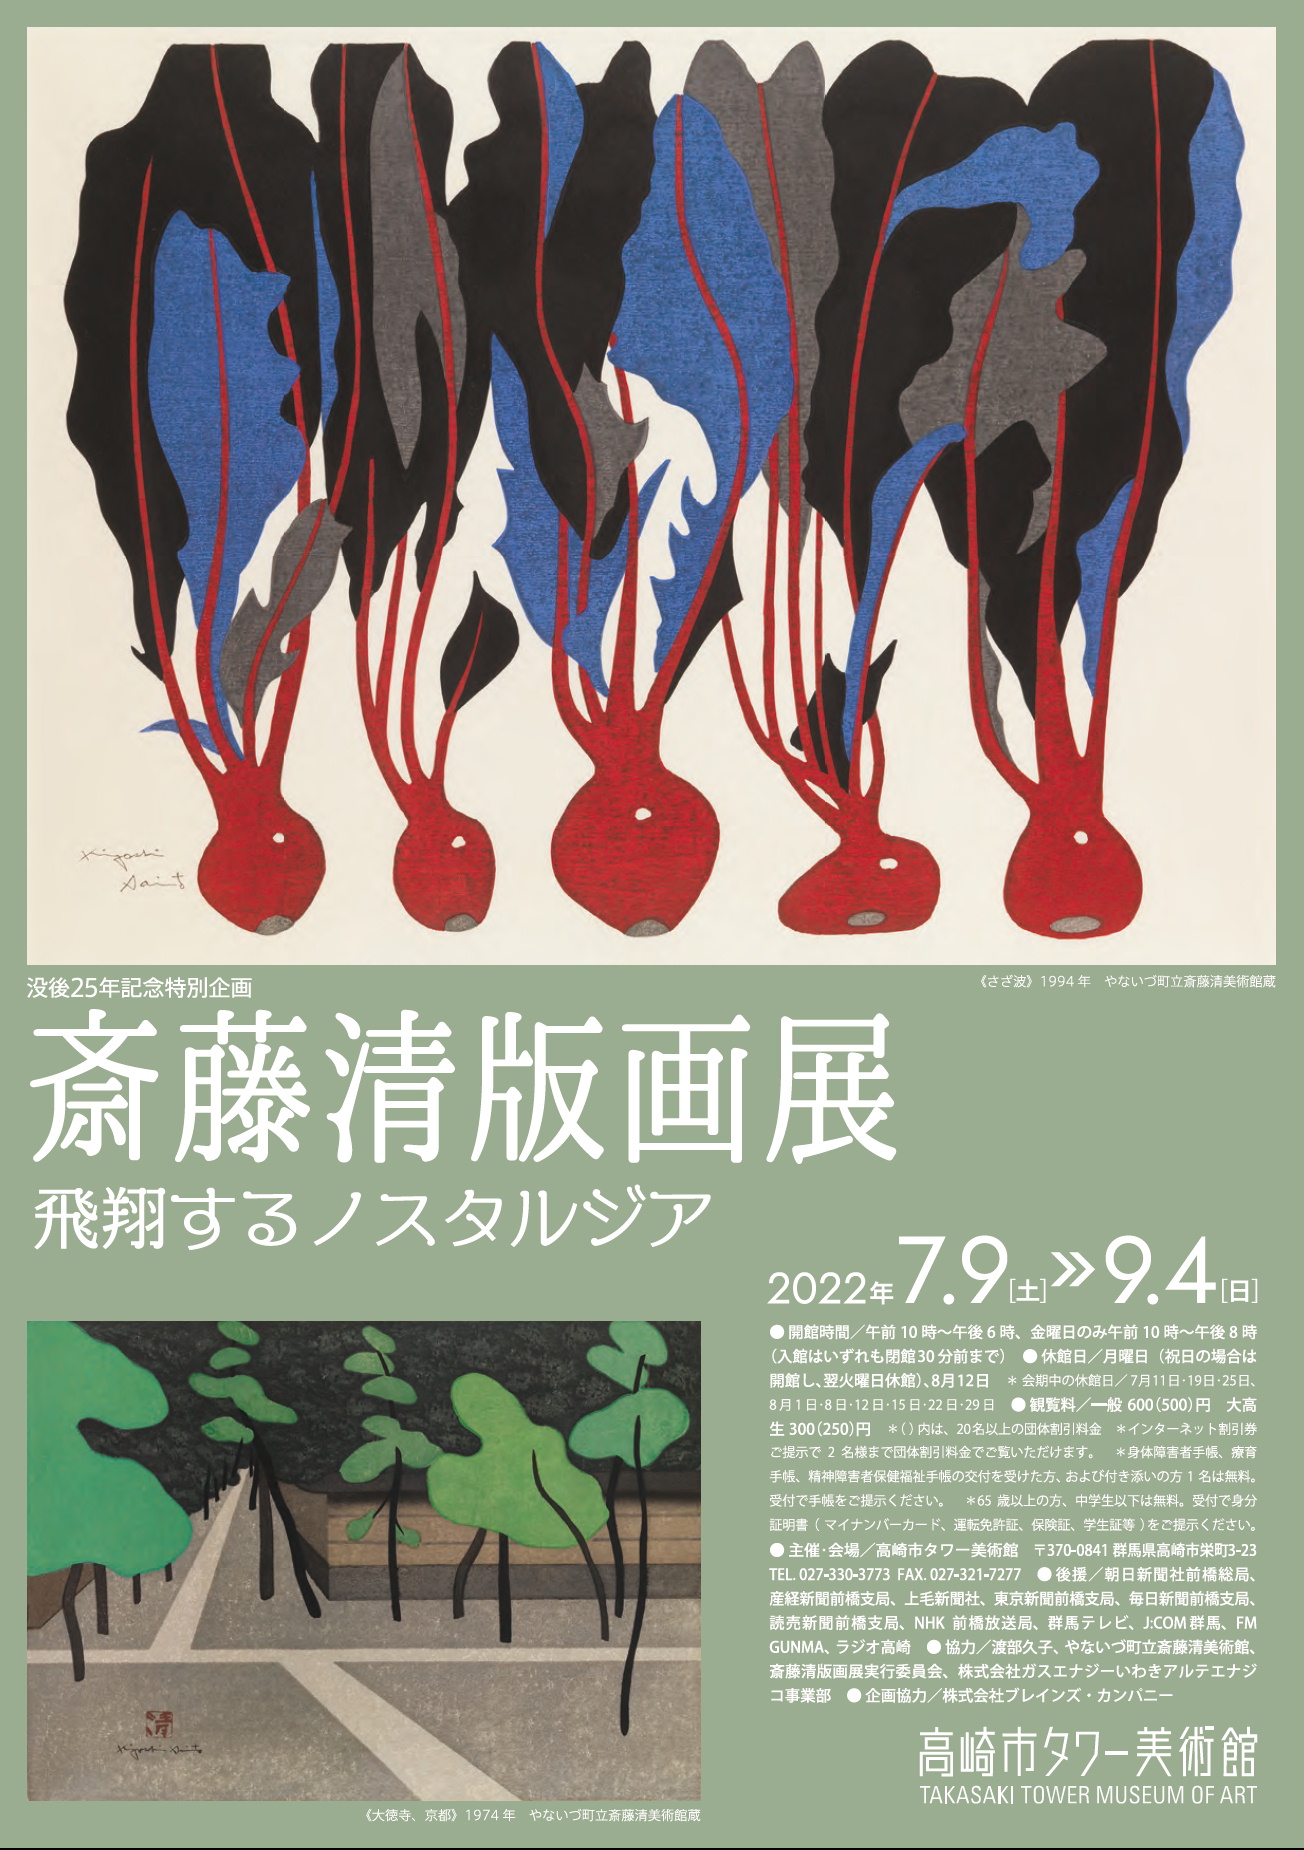 Kiyoshi Saito Print Exhibitionー Flying Nostalgia （Takasaki Tower 